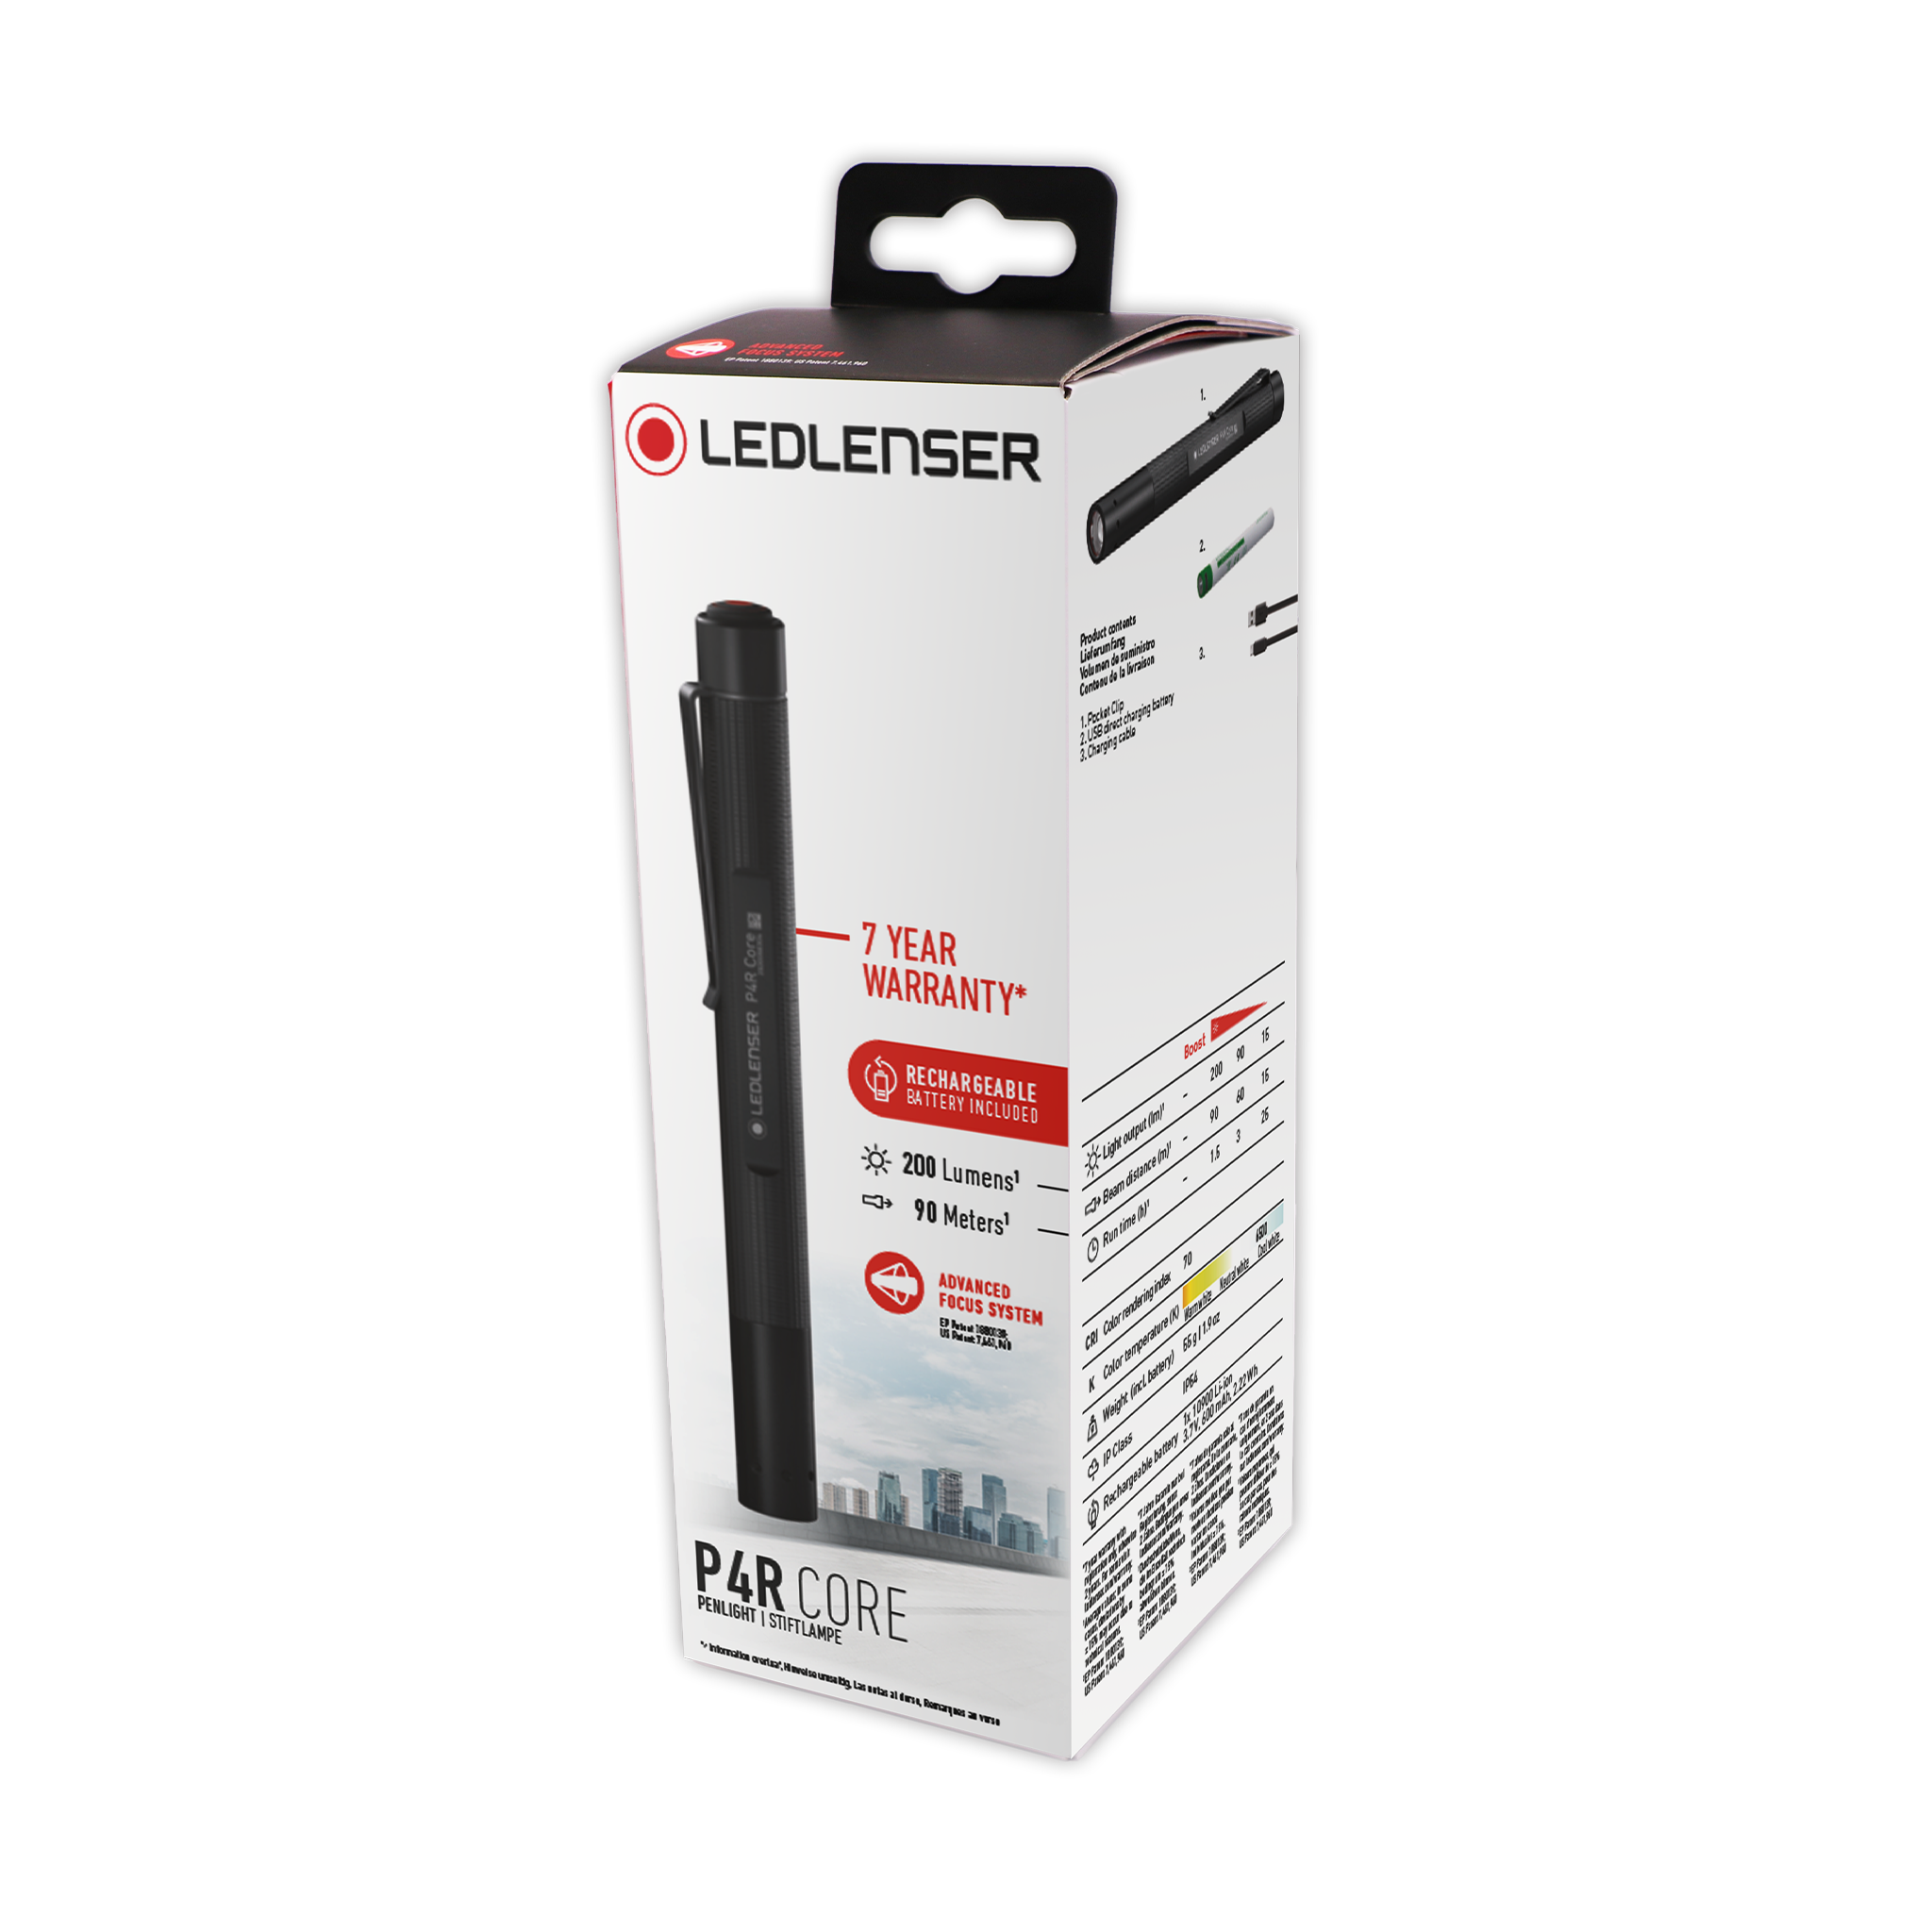 LEDLENSER P2R Core Rechargeable Pen Light, 120 Lumens, Advanced